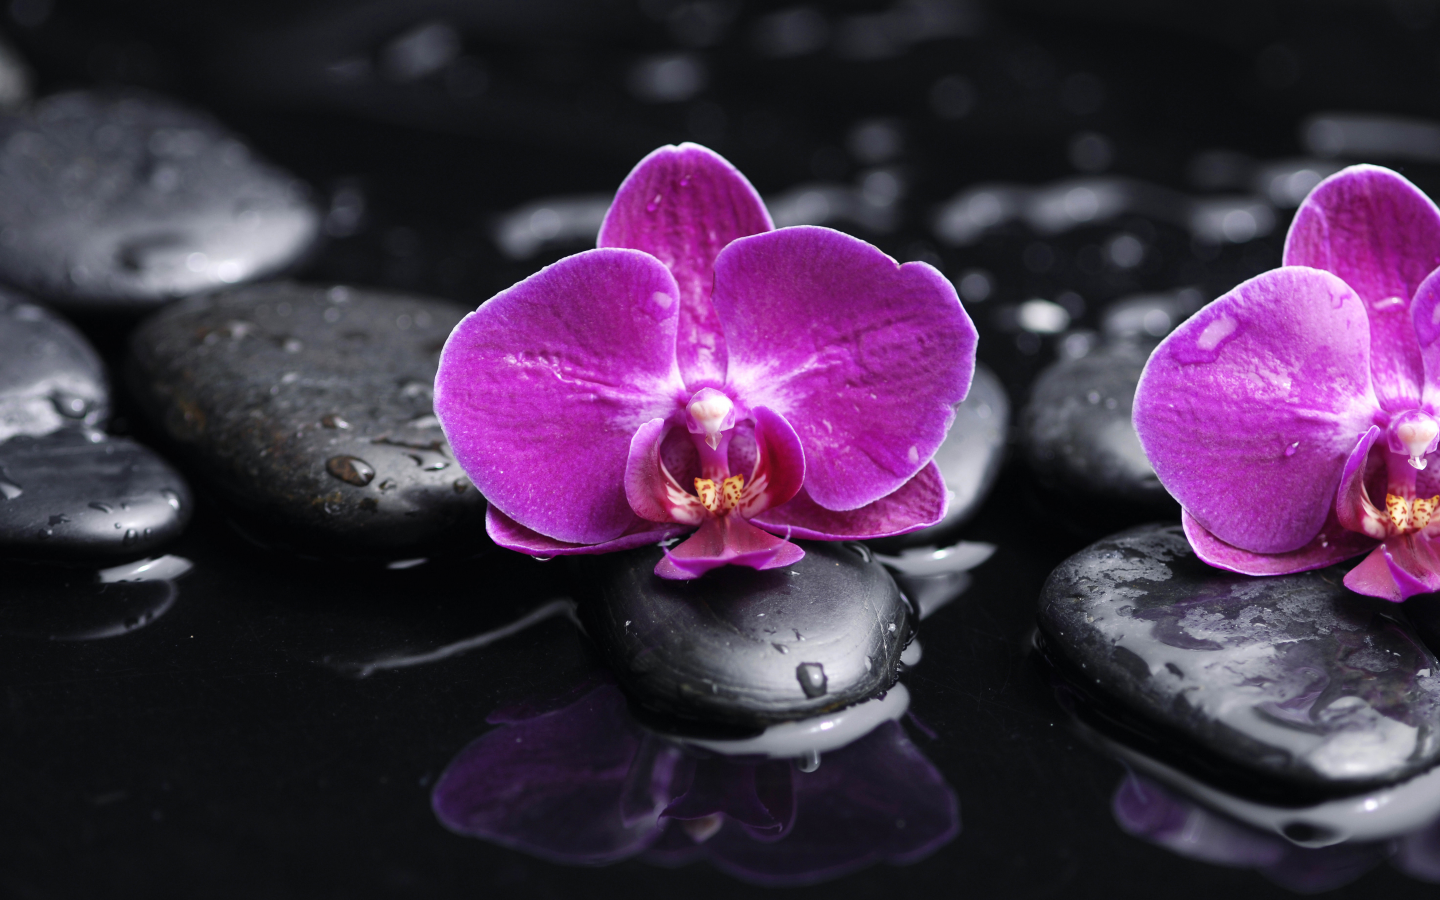 tenderness, black stones, purple, water, phalaenopsis, flowers, orchid, petals, drops, beauty